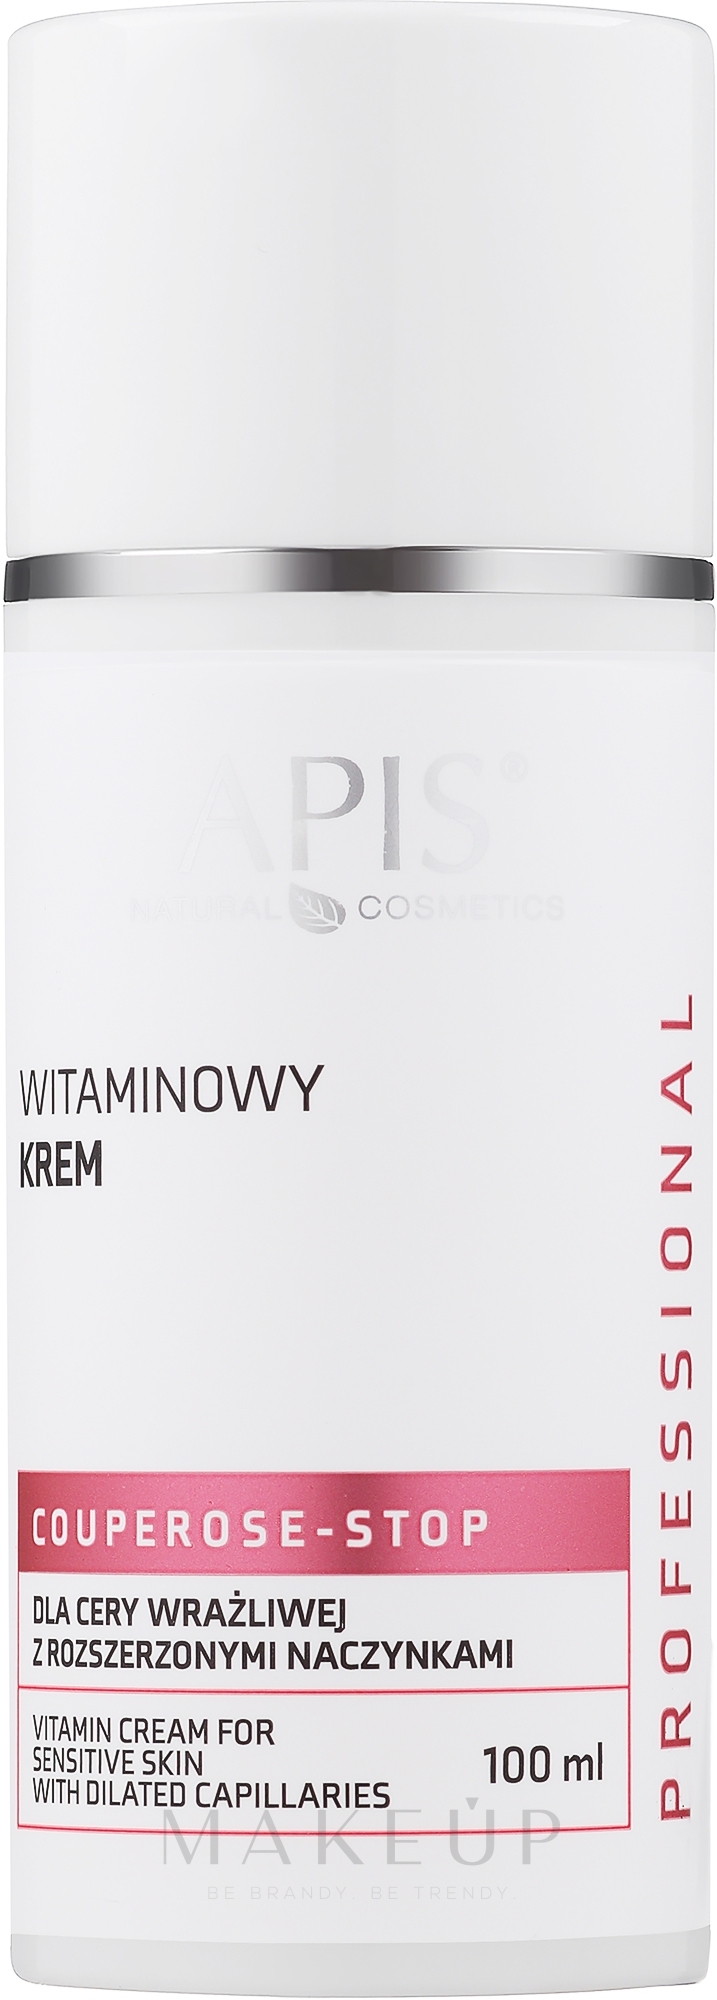 Vitamin-Gesichtscreme für empfindliche Haut mit erweiterten Kapillaren - APIS Professional Couperose-Stop Vitamin Cream — Bild 100 ml